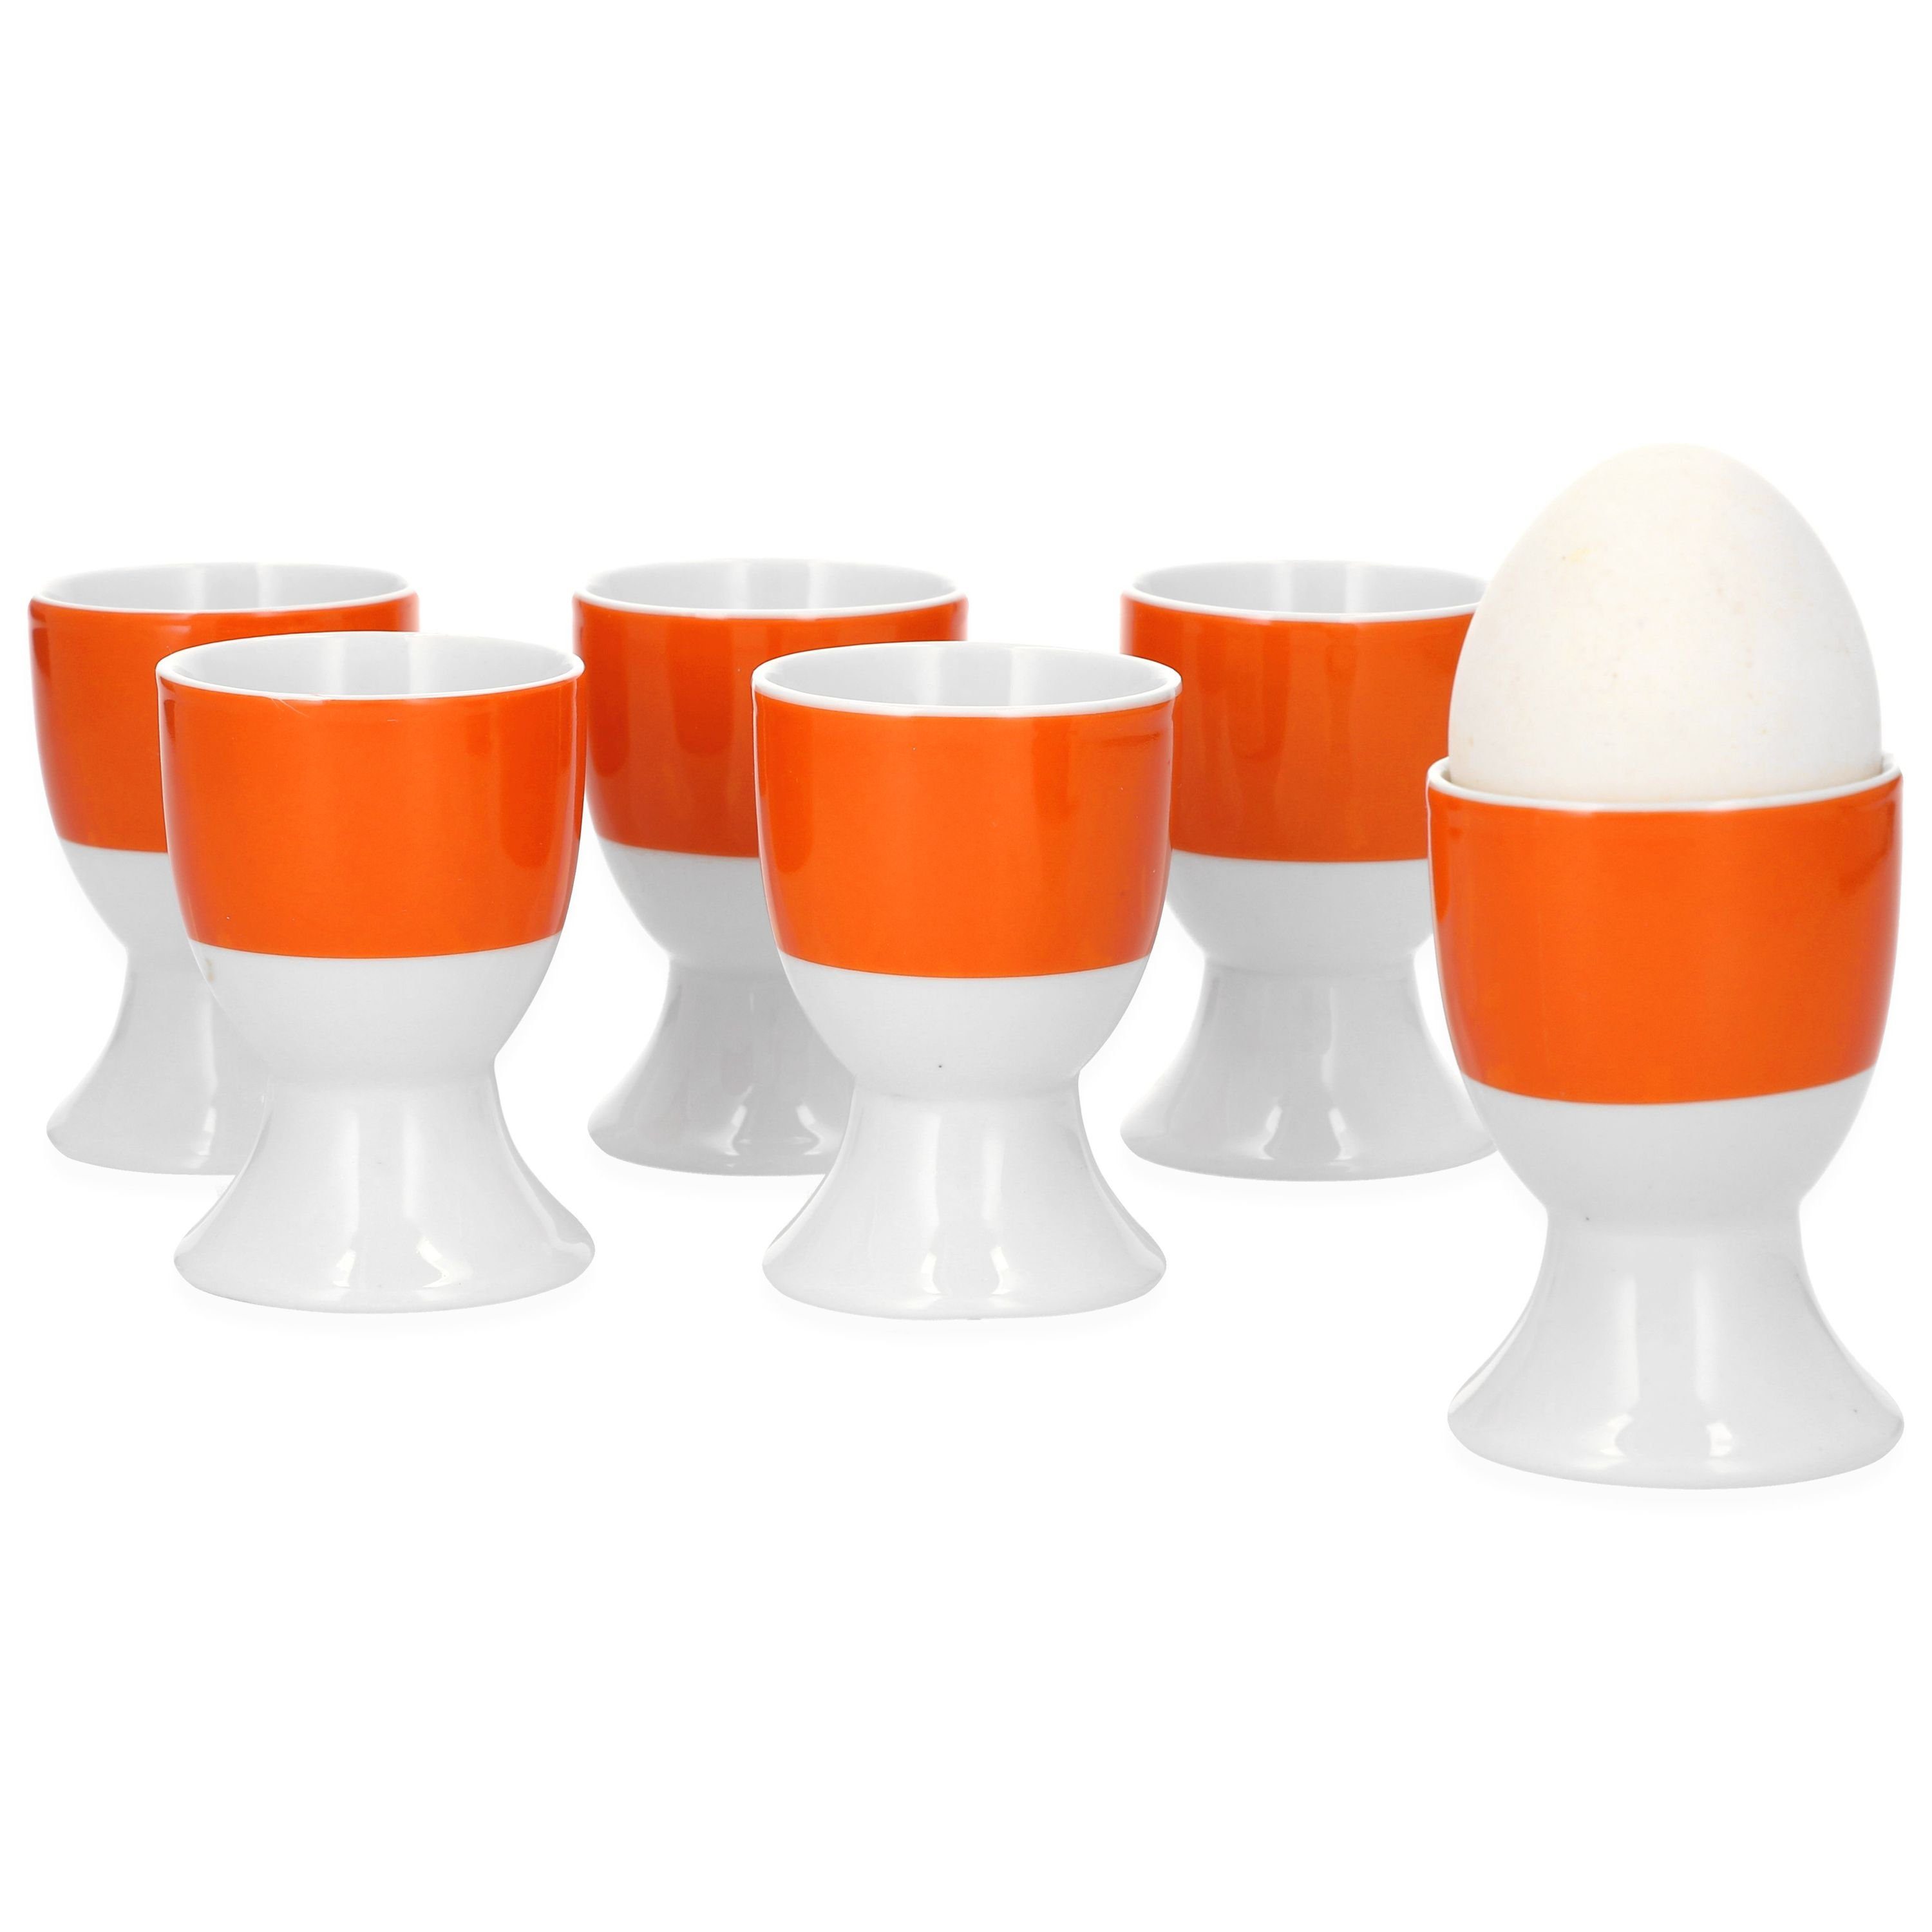 van Well Eierbecher Van Well 6er Set Eierbecher Serie Vario Porzellan - Farbe wählbar orange